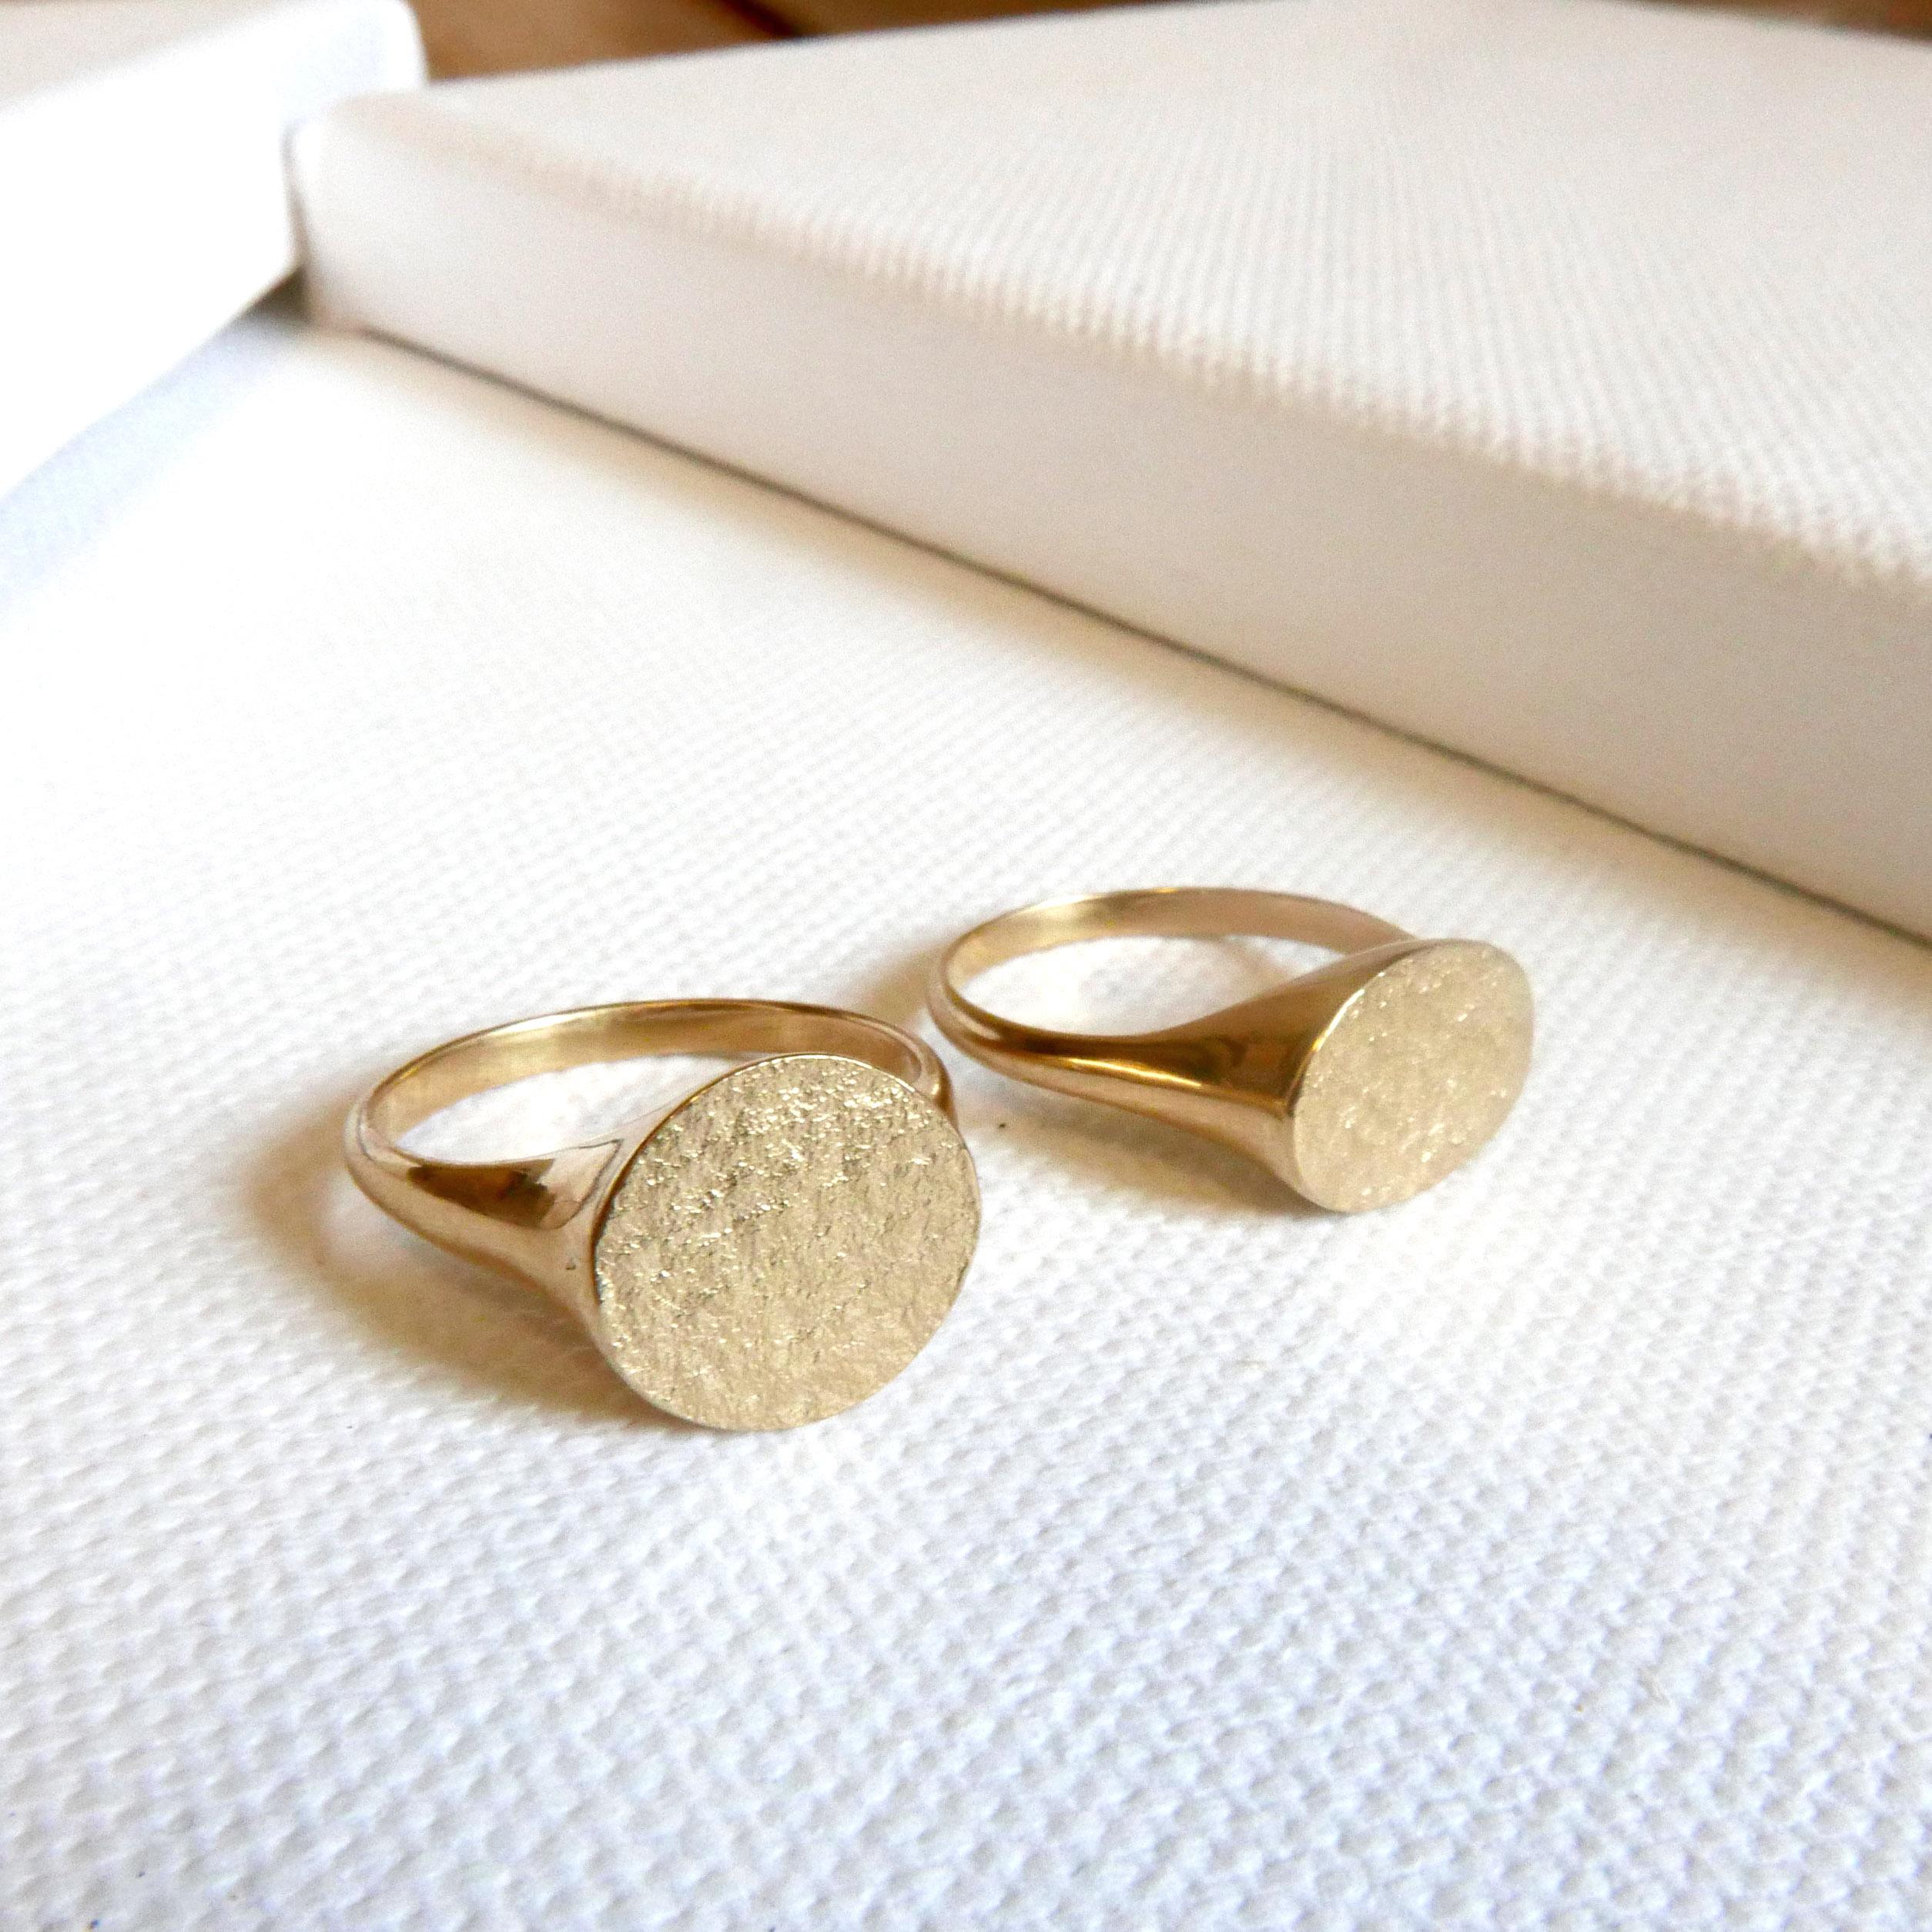 Women's Textured Signet Ring in 9 Karat Gold by Allison Bryan